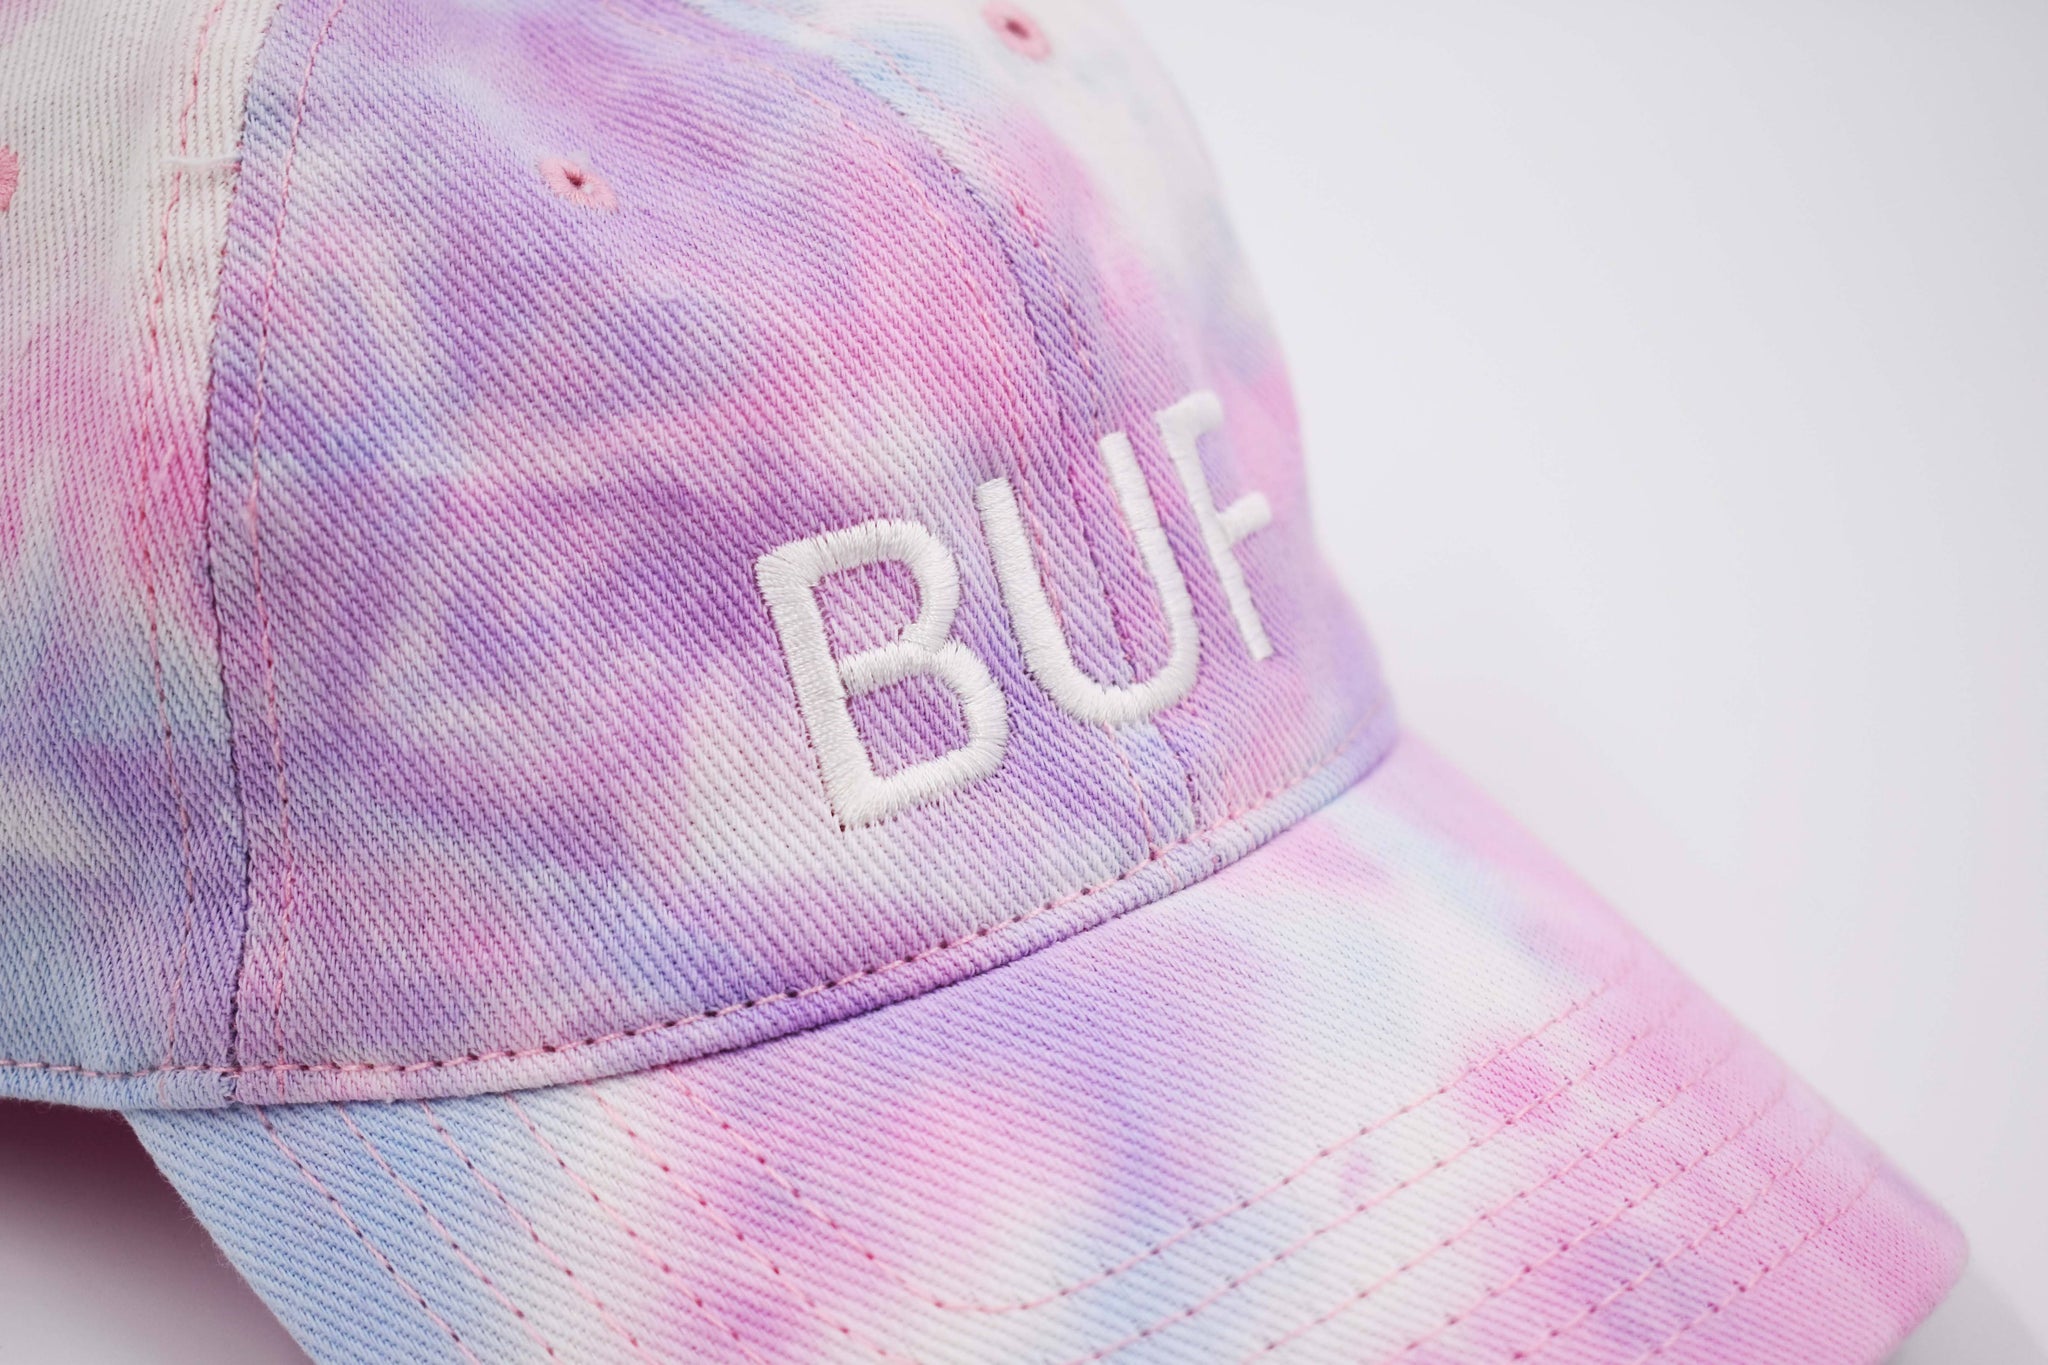 Pink/Blue Tie Dye BUF Cap